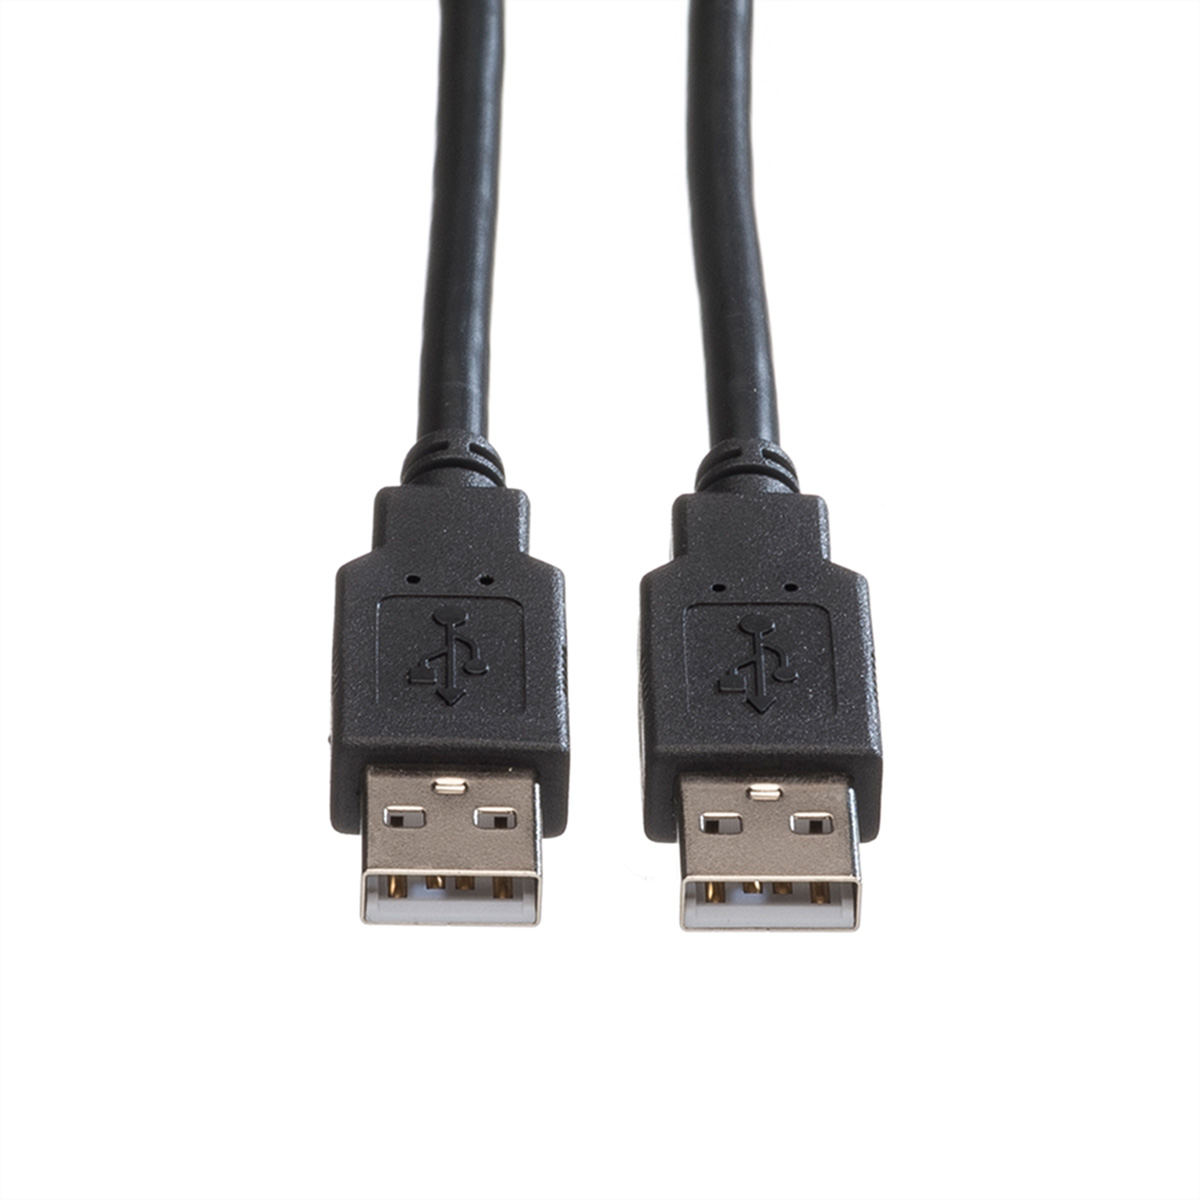 ROLINE USB 2.0 Kabel, A-A Typ USB Kabel 2.0